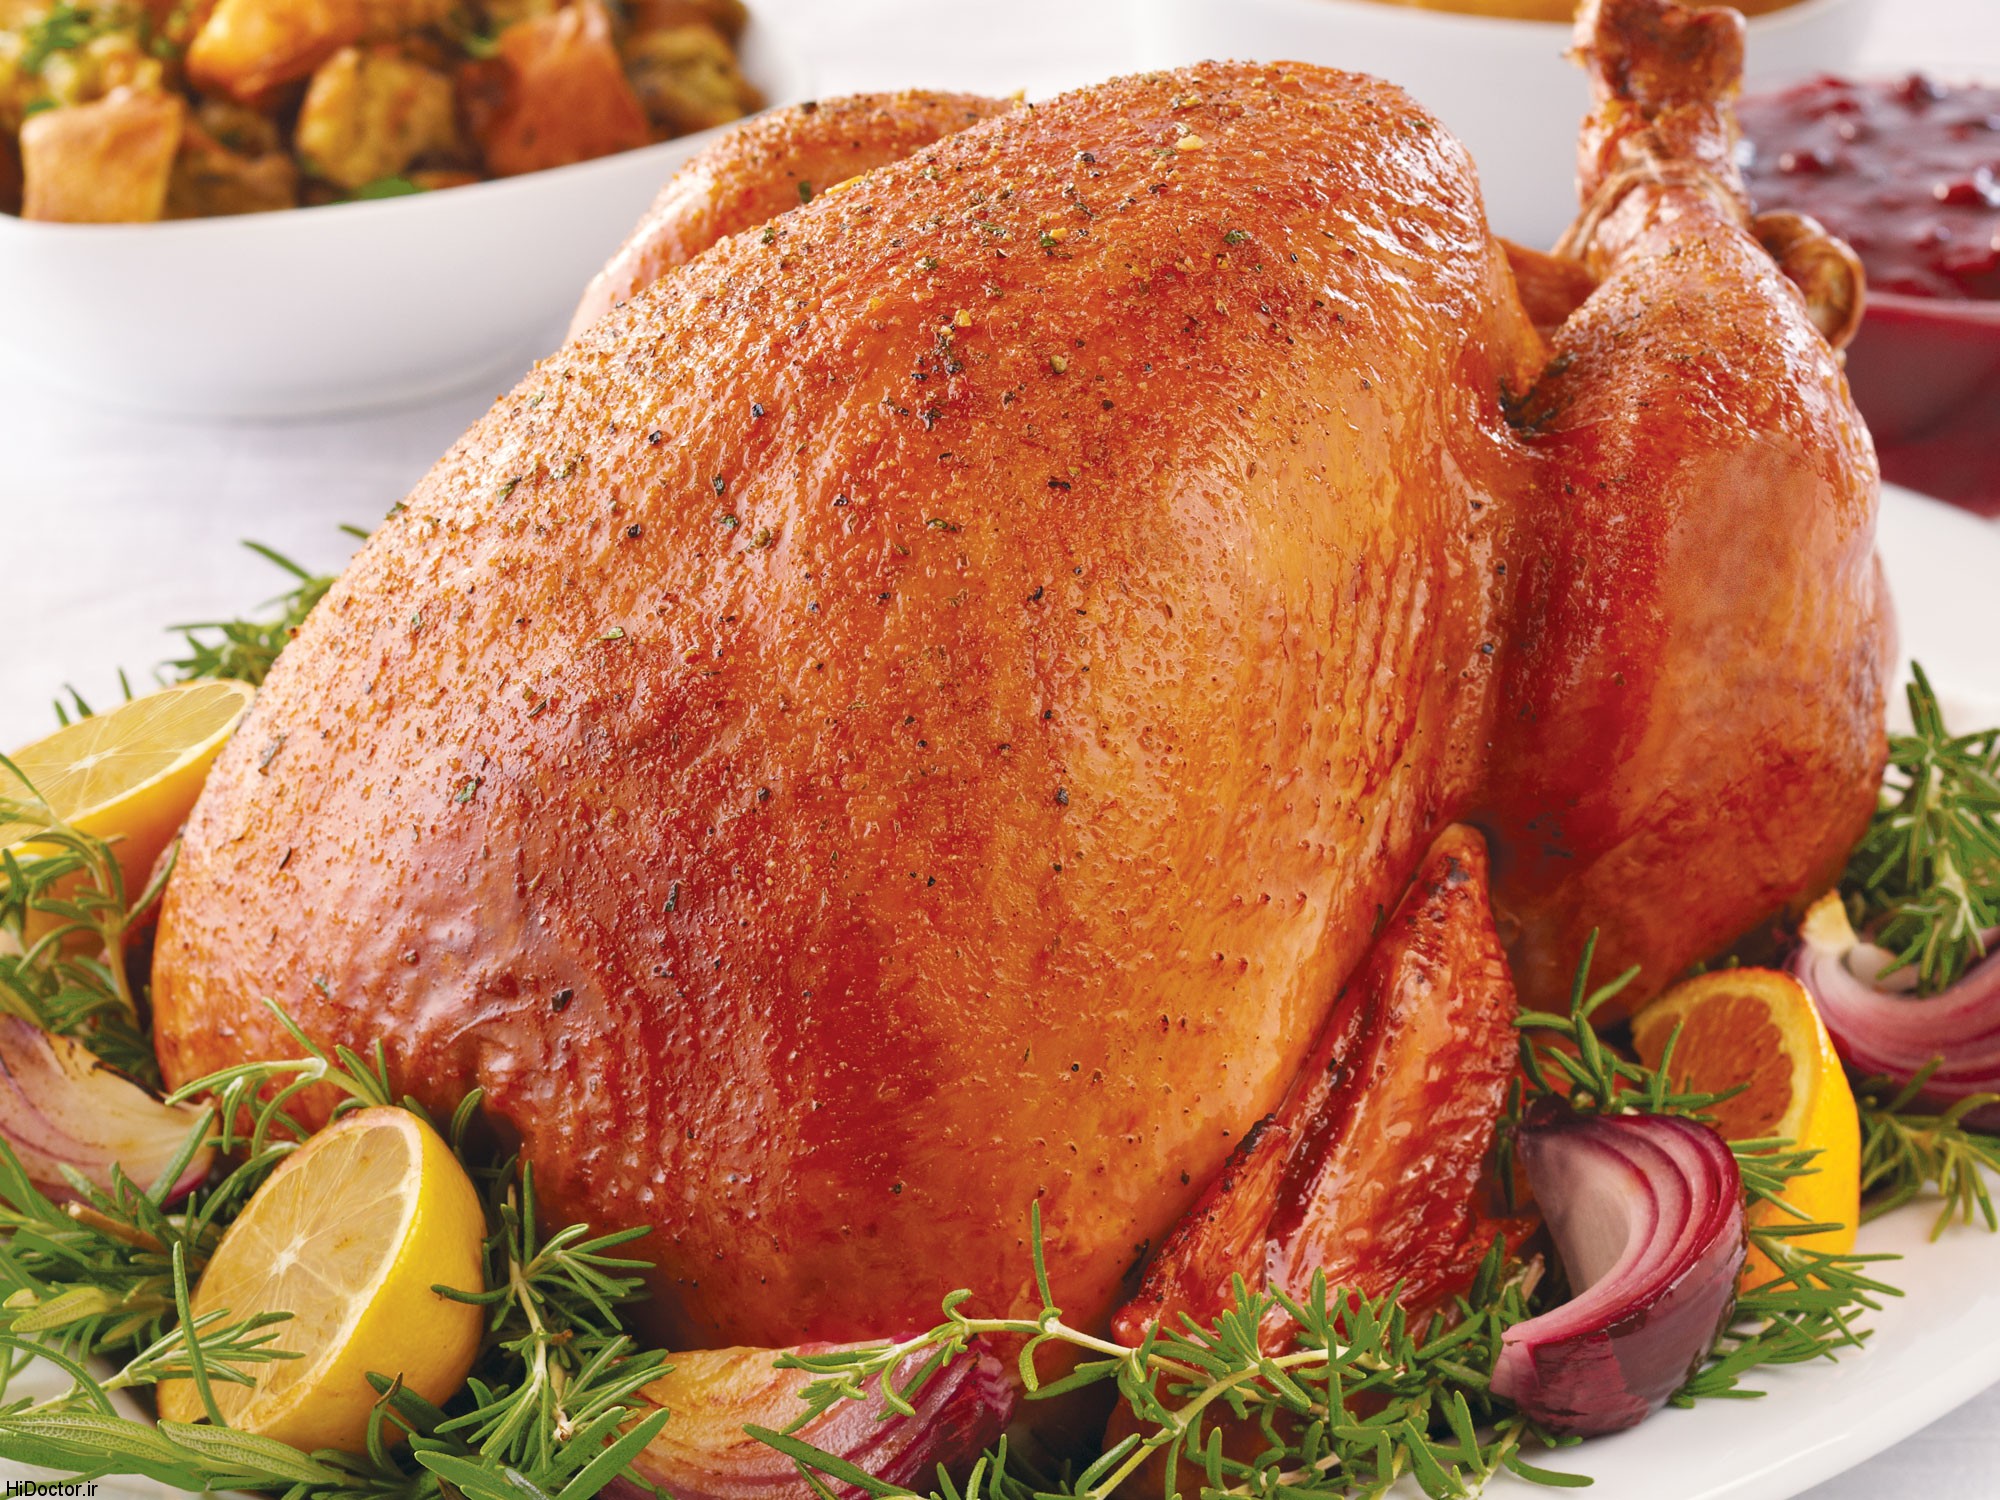 turkey 1 - آشنایی با خواص انواع گوشت ها و آگاهی از مضرات مصرف بی رویه گوشت